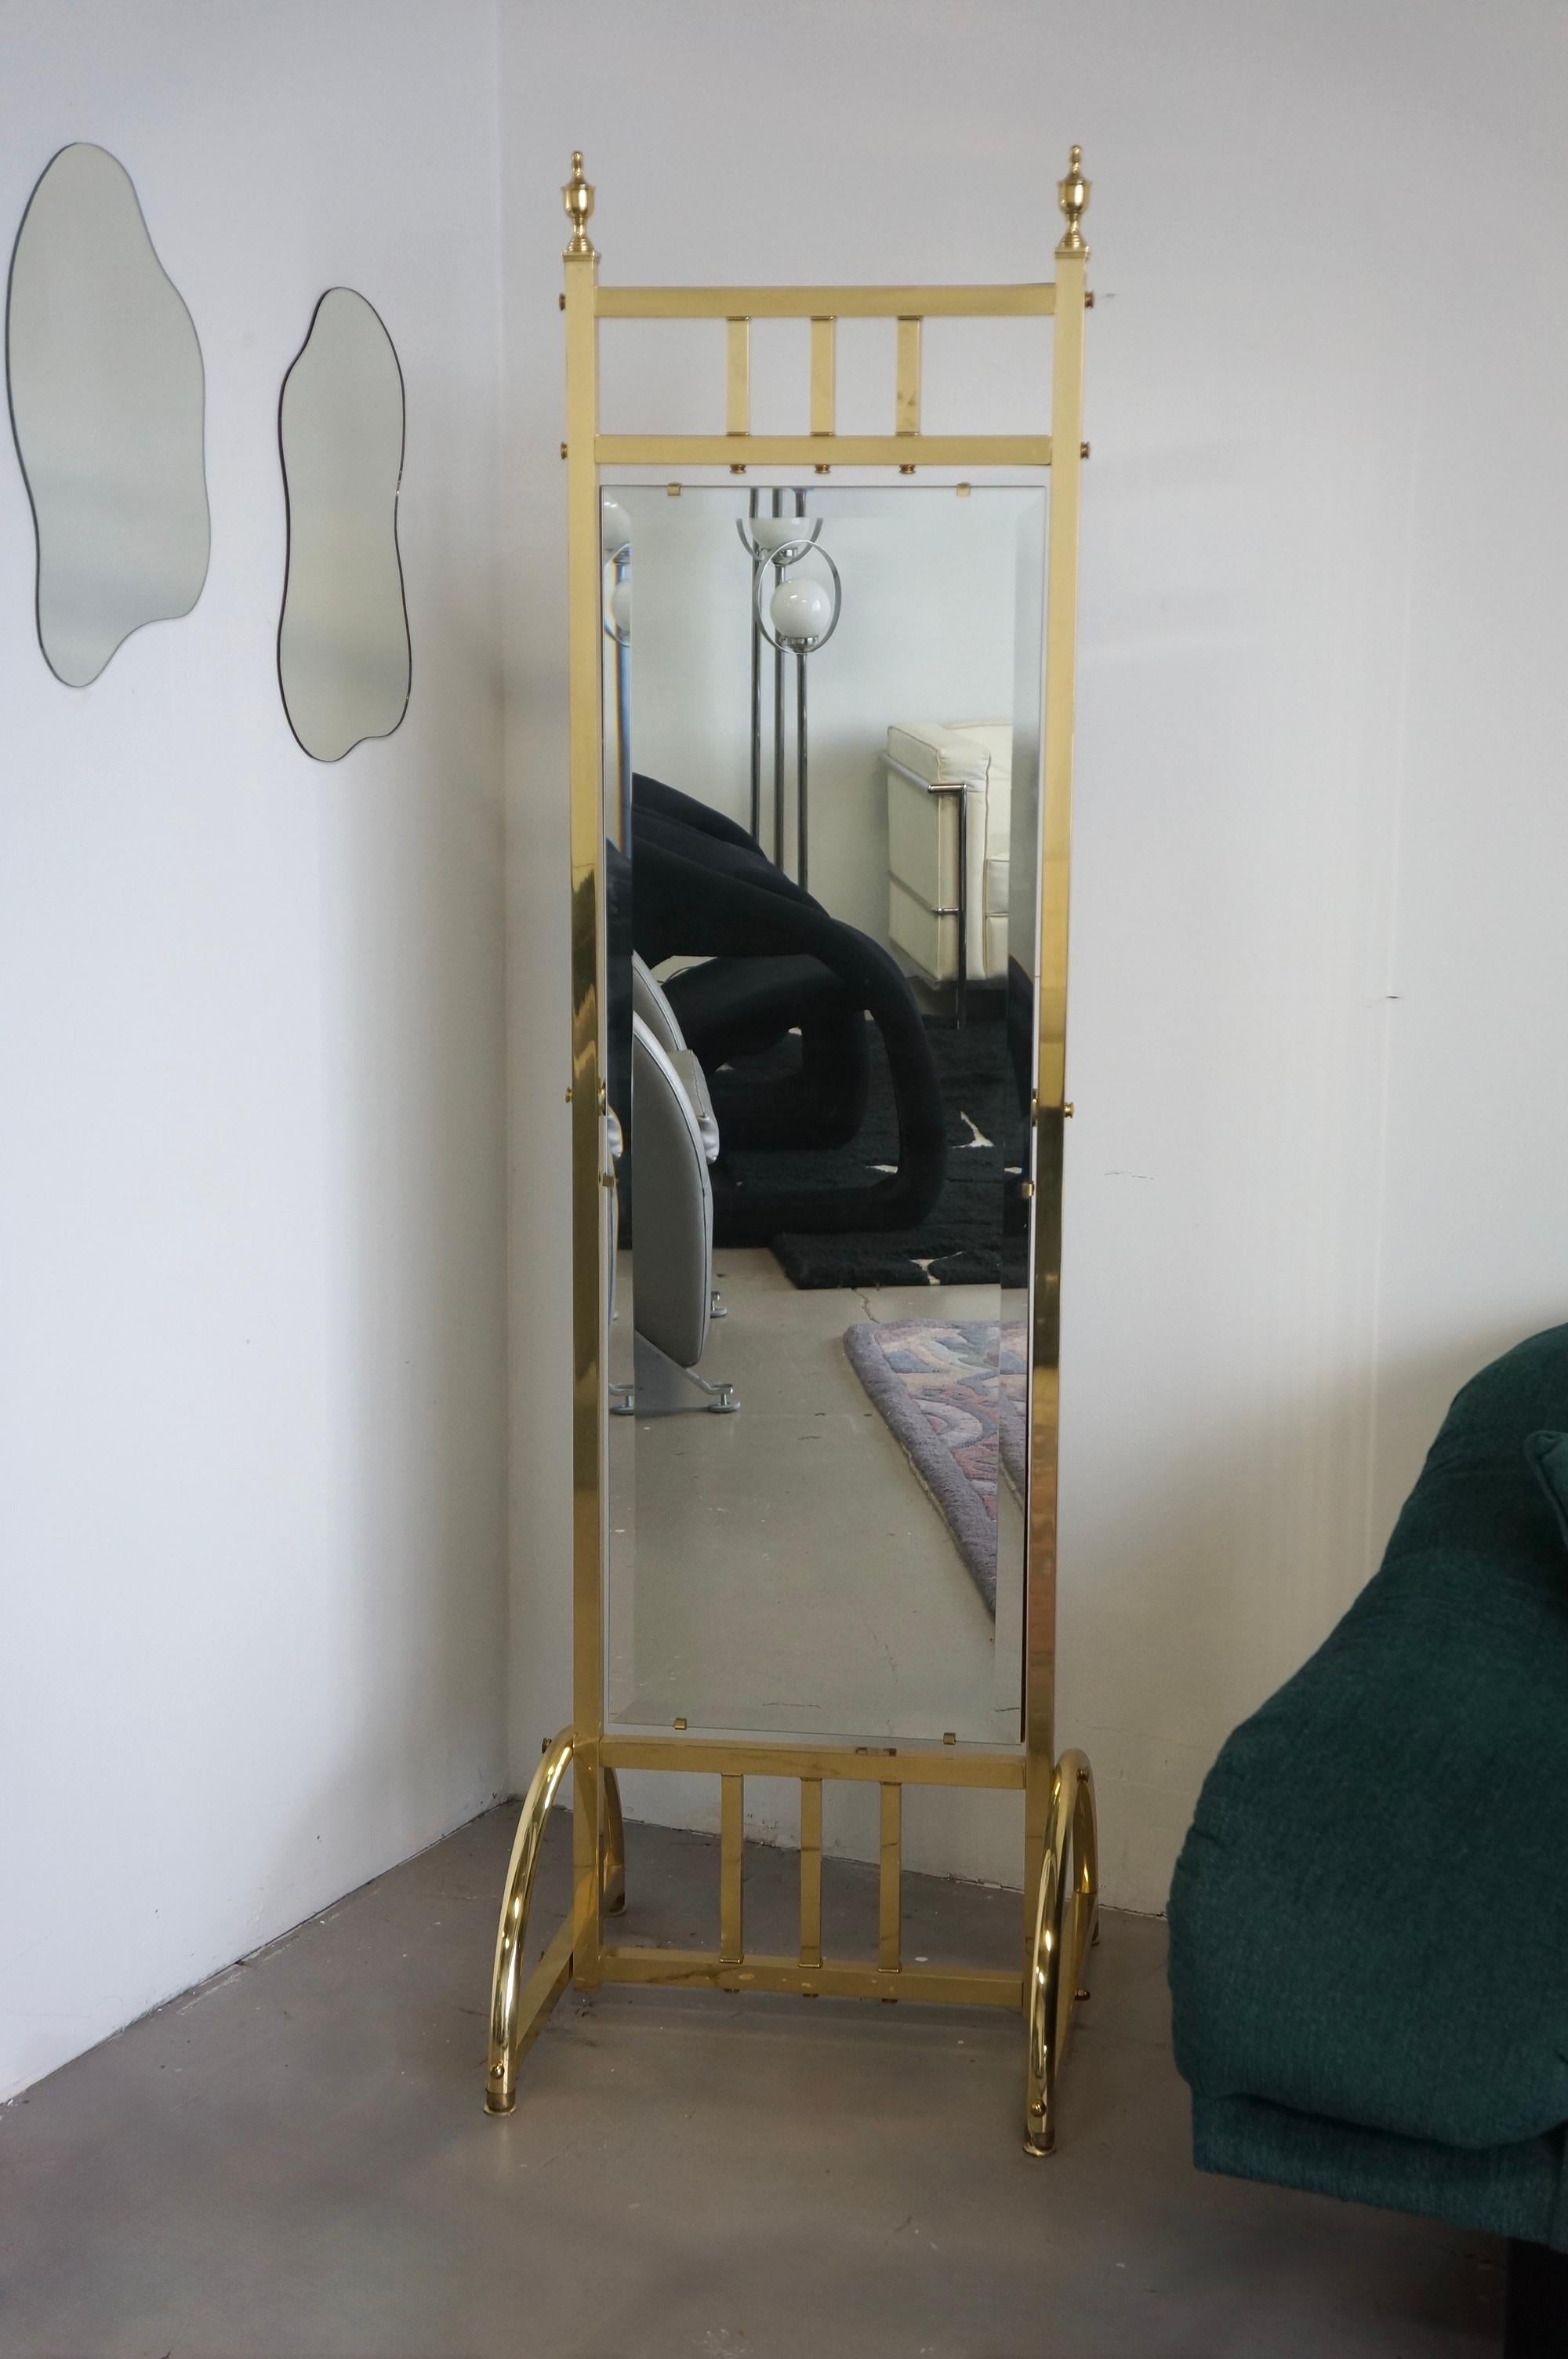 Wunderschöner Standspiegel aus Messing im Hollywood-Regency-Stil. Dieser Spiegel hat einen Messingkorpus mit einem abgeschrägten Spiegel, der von einer Holzrückwand gehalten wird. Es gibt überall schöne Details, wie zum Beispiel die Kronen an den